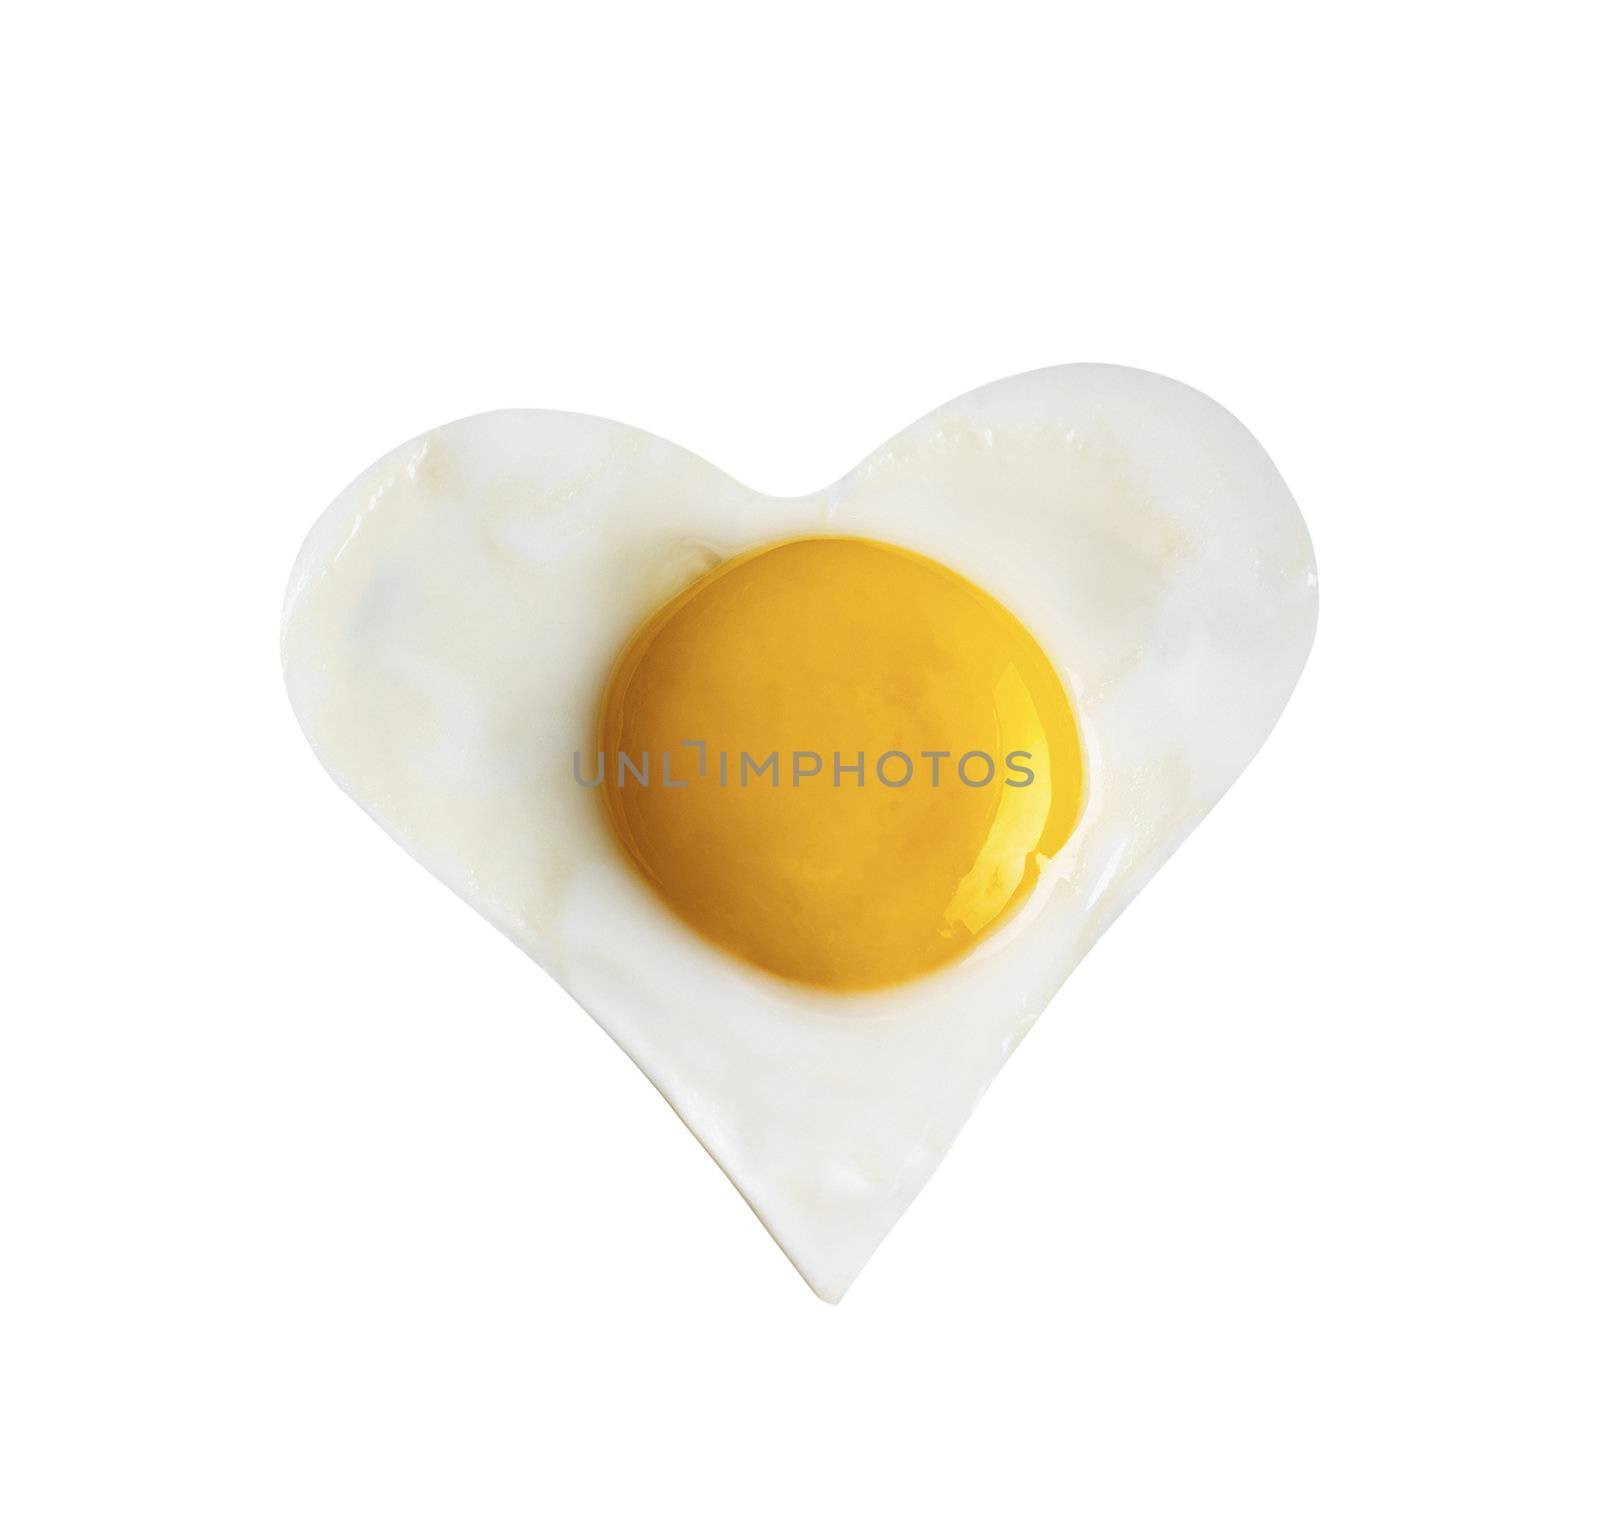 Fried egg like heart by ozaiachin